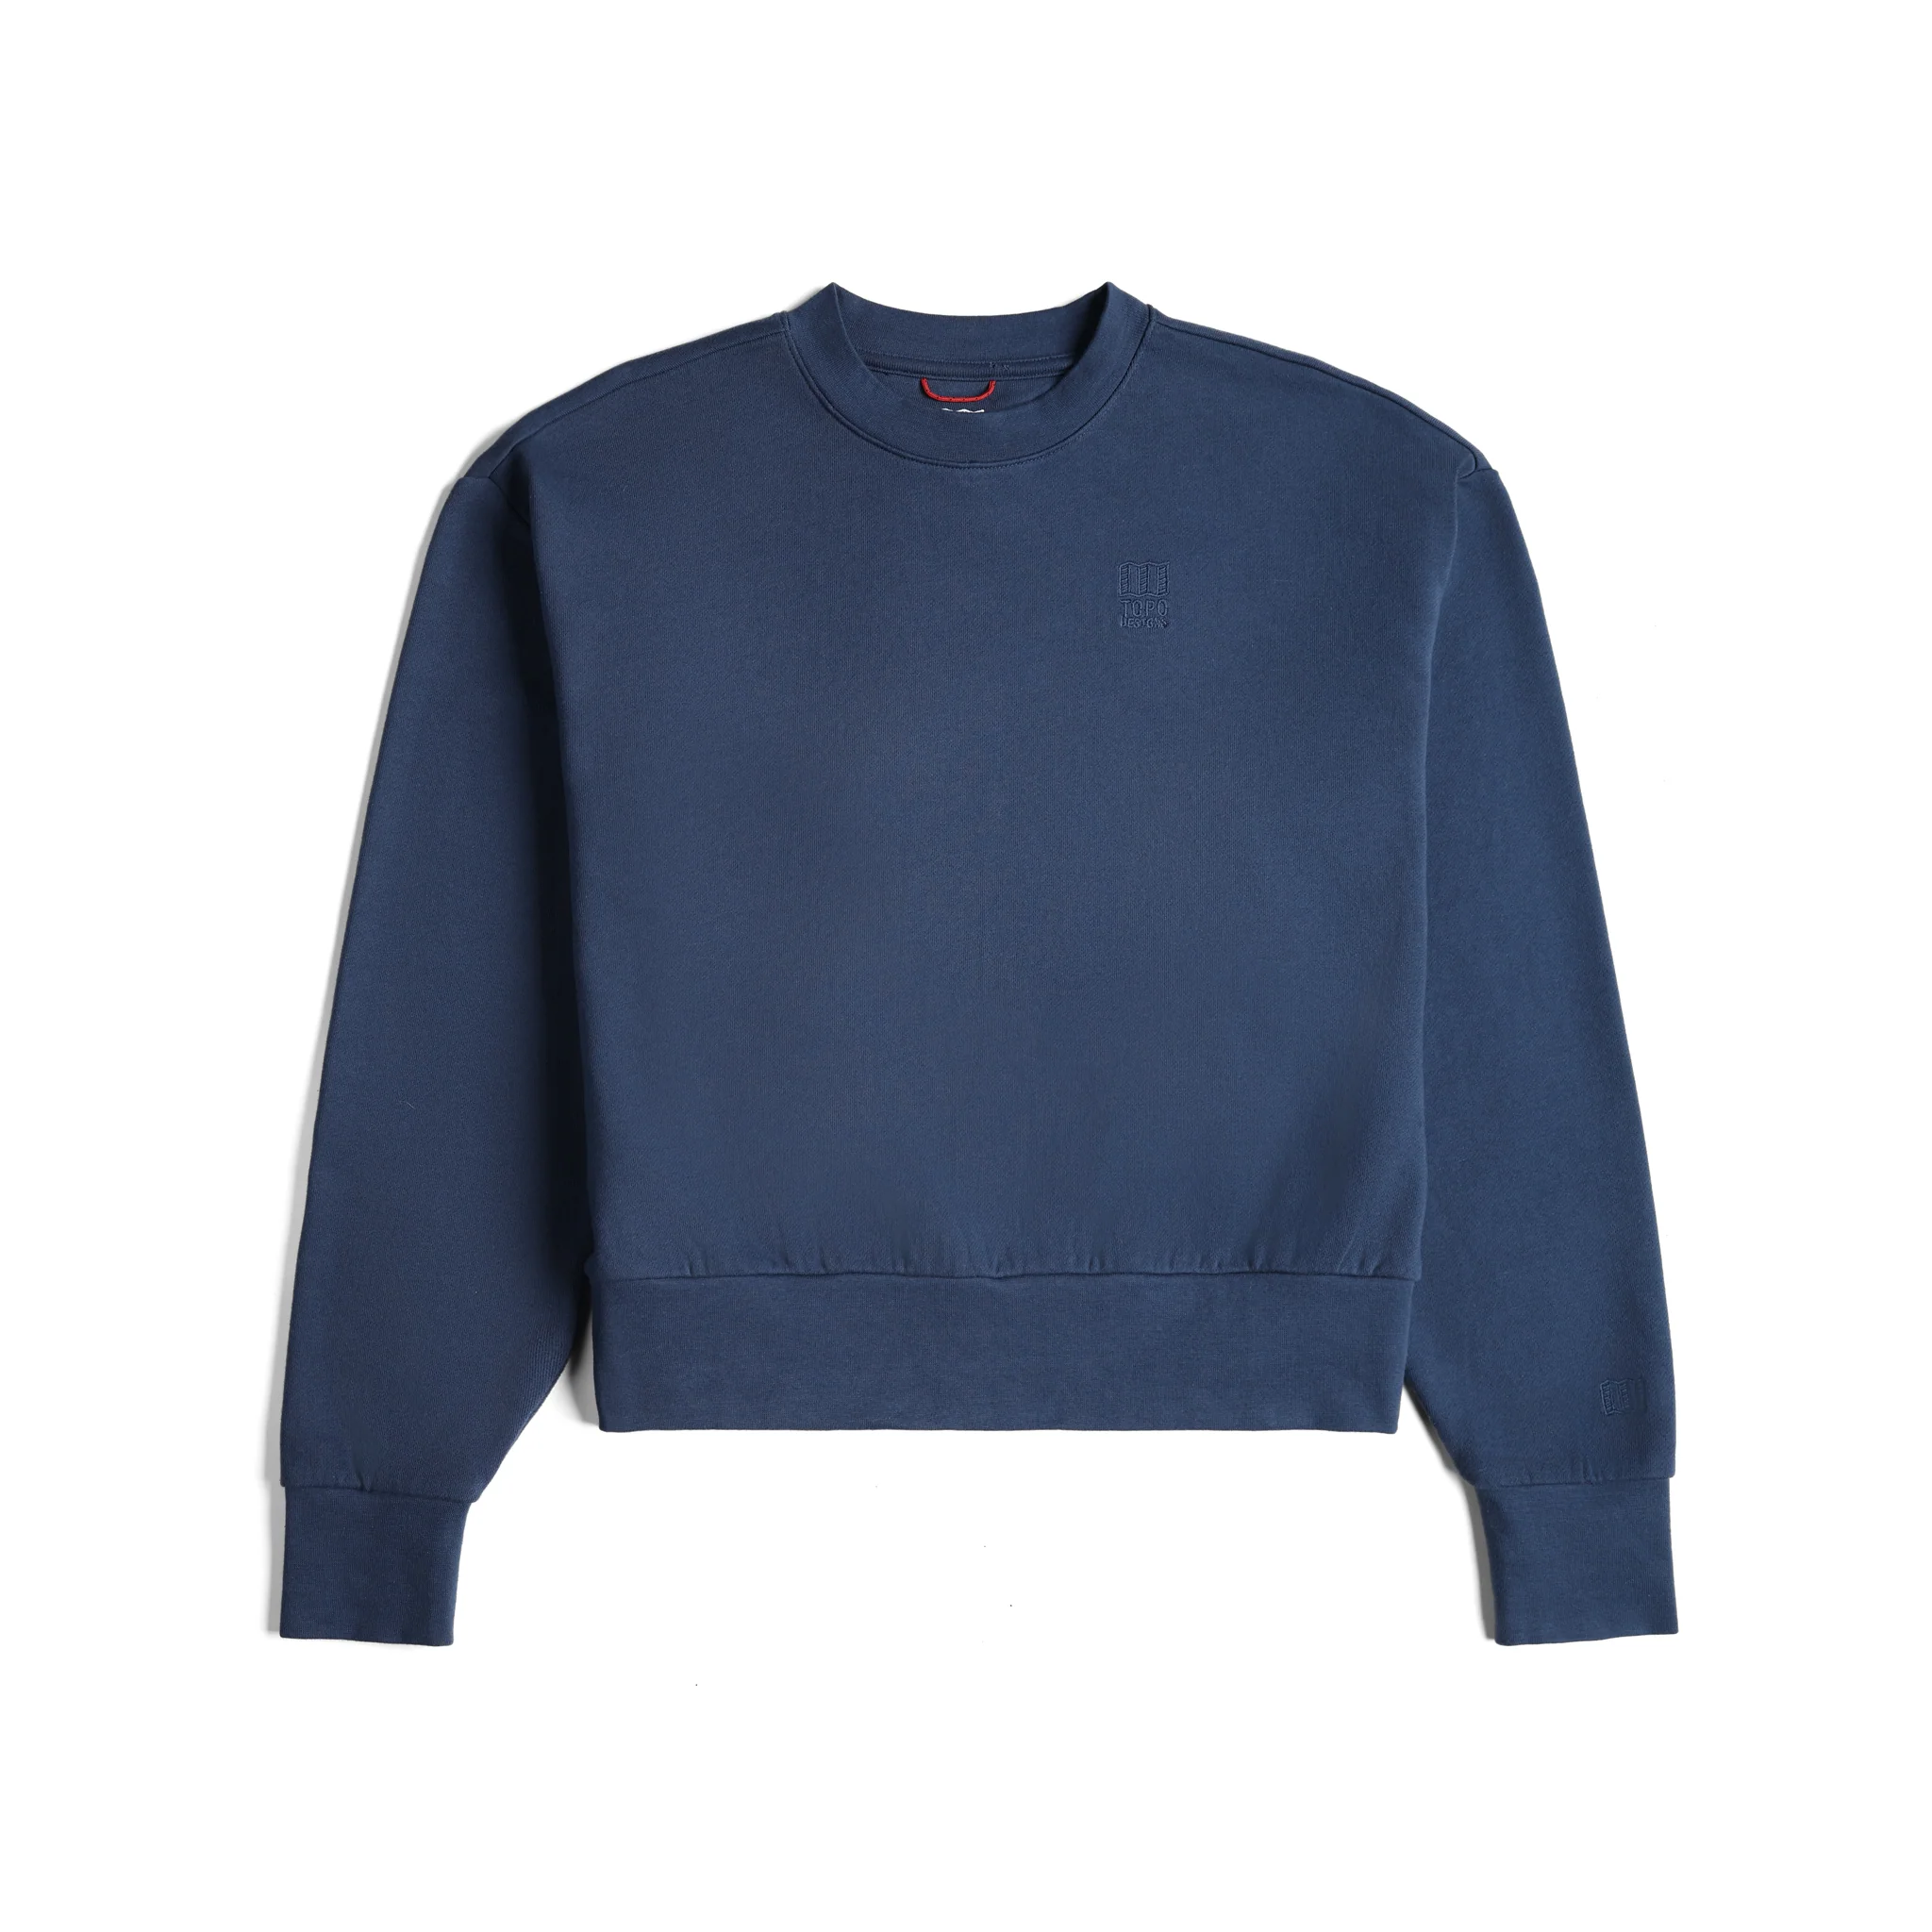 Topo Designs Canada, Womens/Apparel/Sweaters